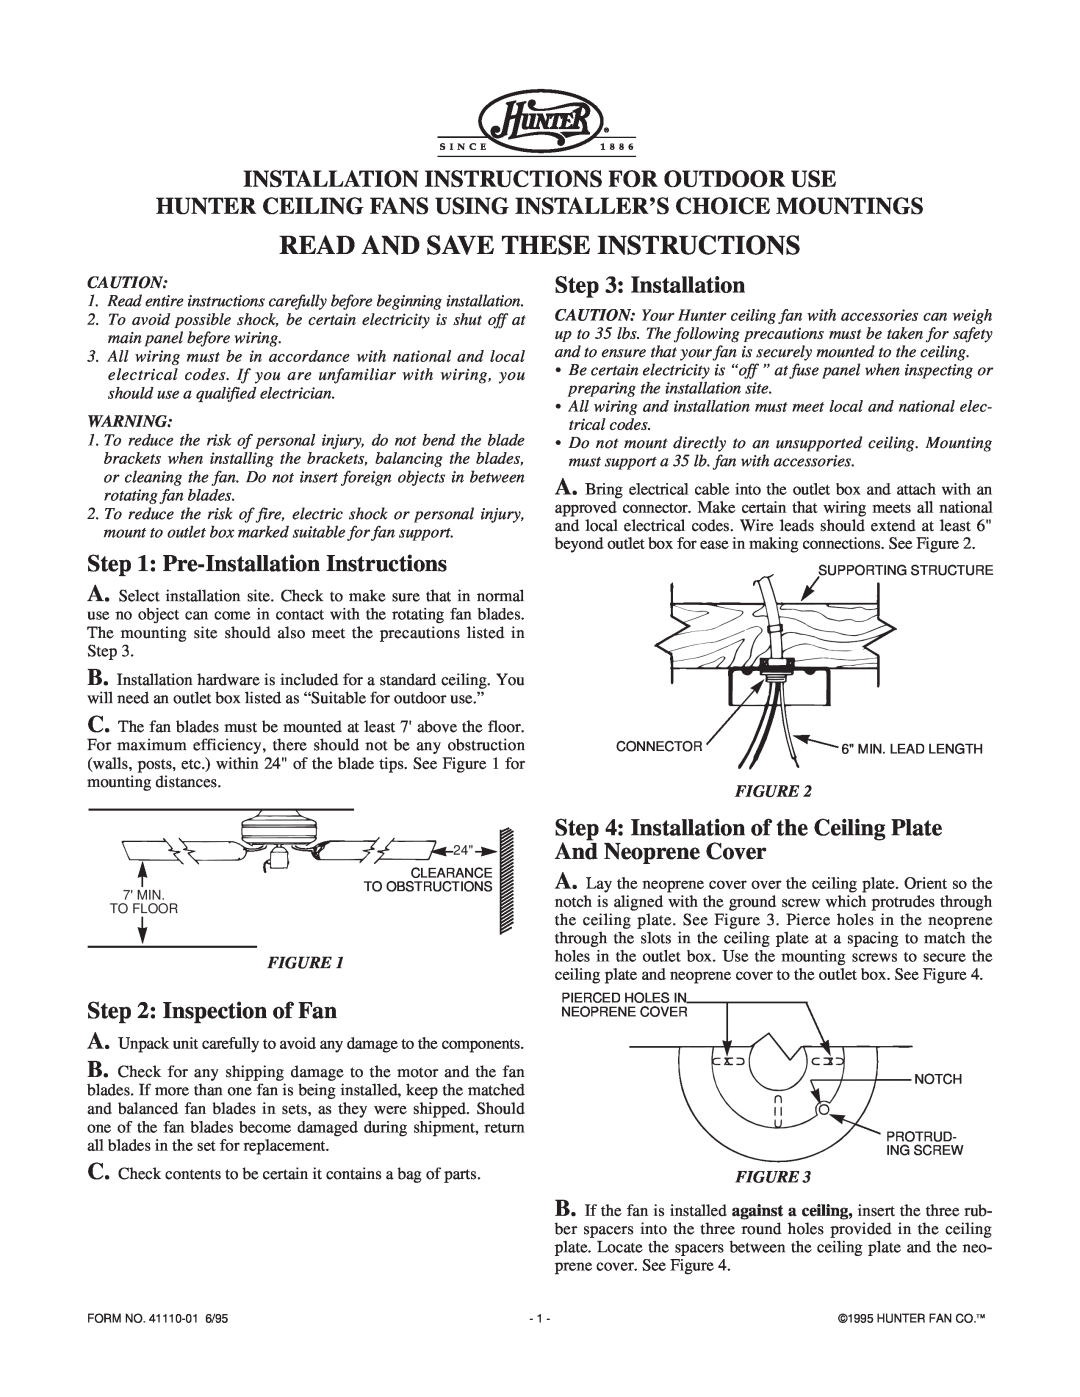 Hunter Fan Outdoor Ceiling Fan installation instructions Installation Instructions For Outdoor Use, Inspection of Fan 